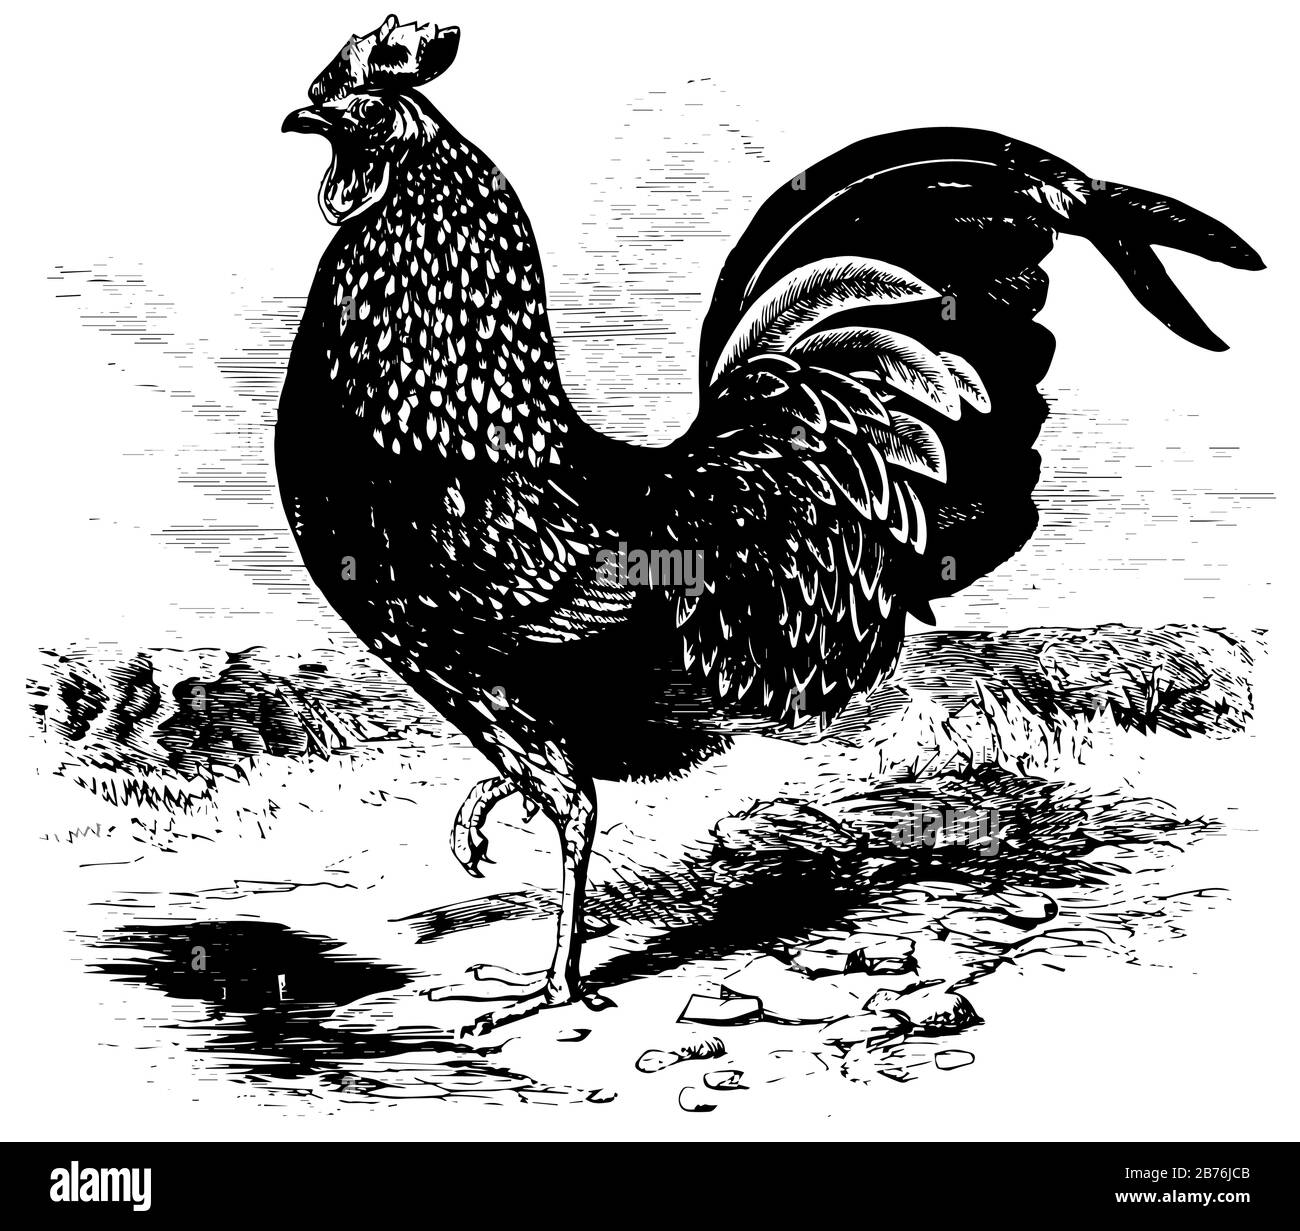 Kulm Rooster, qui aurait été apporté de Java ou Sumatra, dessin vintage ou illustration de gravure. Illustration de Vecteur